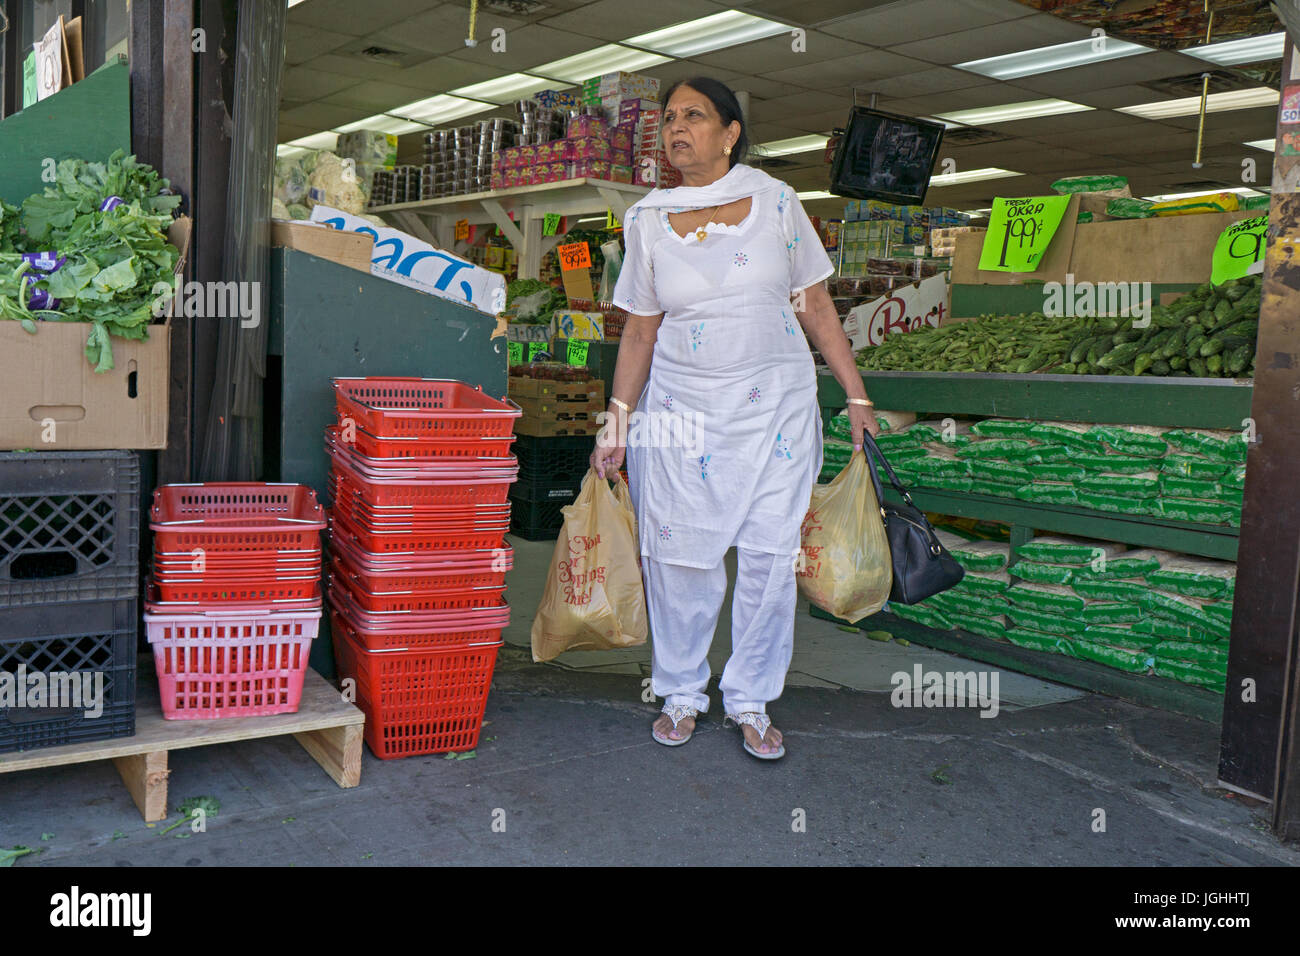 Las mujeres de Asia meridional en moda étnica de compras en un supermercado en 37th Avenue en Jackson Heights, Queens, Ciudad de Nueva York. Foto de stock